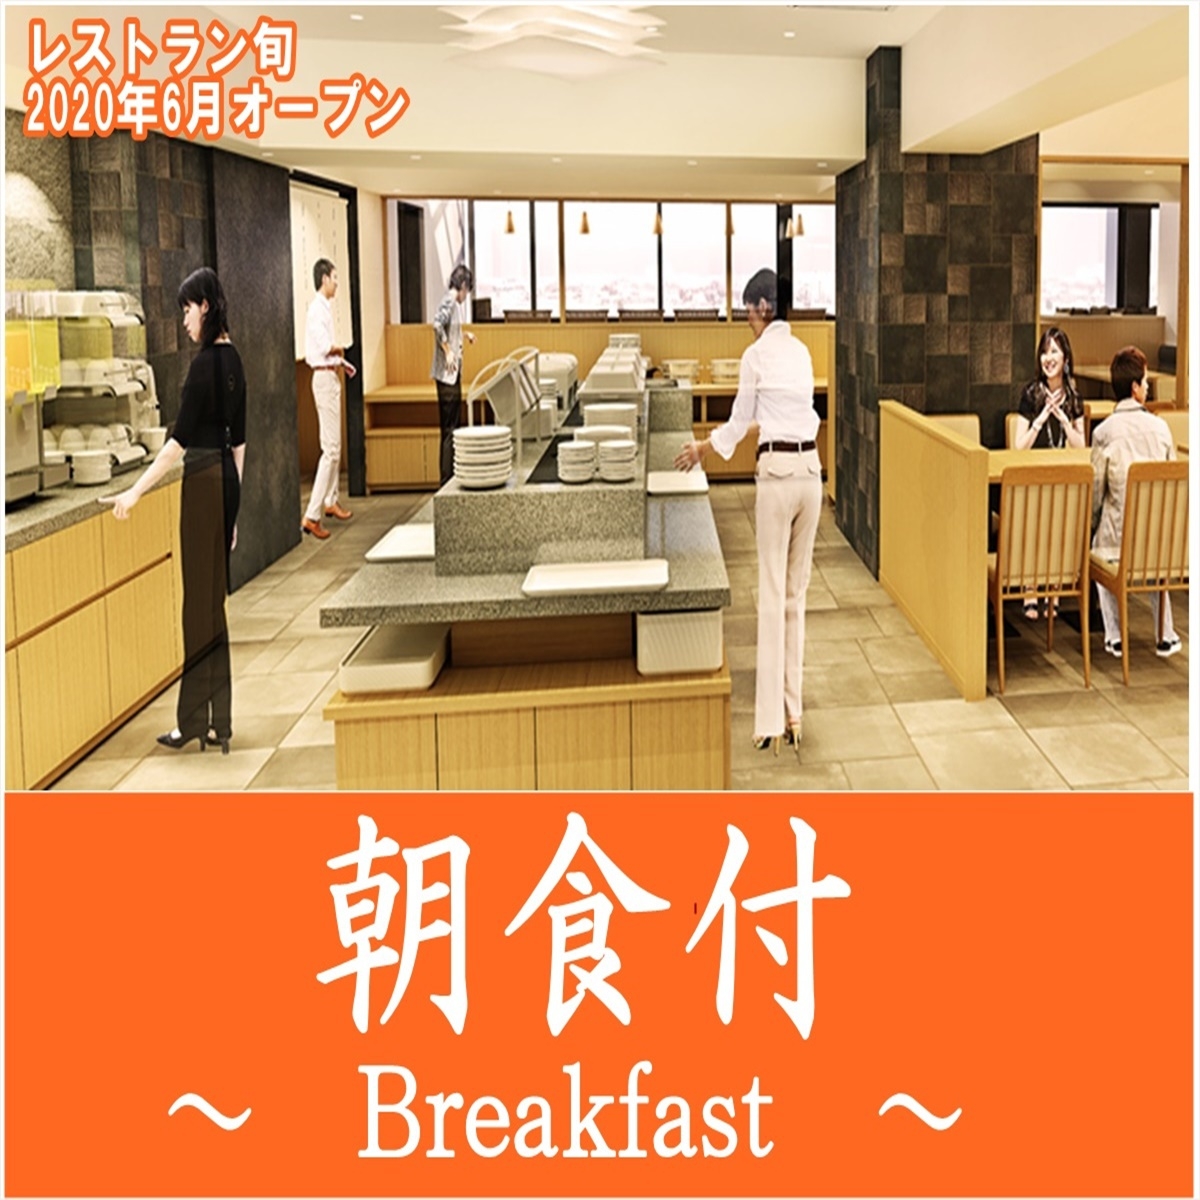 【温泉SALE】12階のレストラン♪新しく・明るく・広くなりました。ゆっくり朝食をどうぞ♪